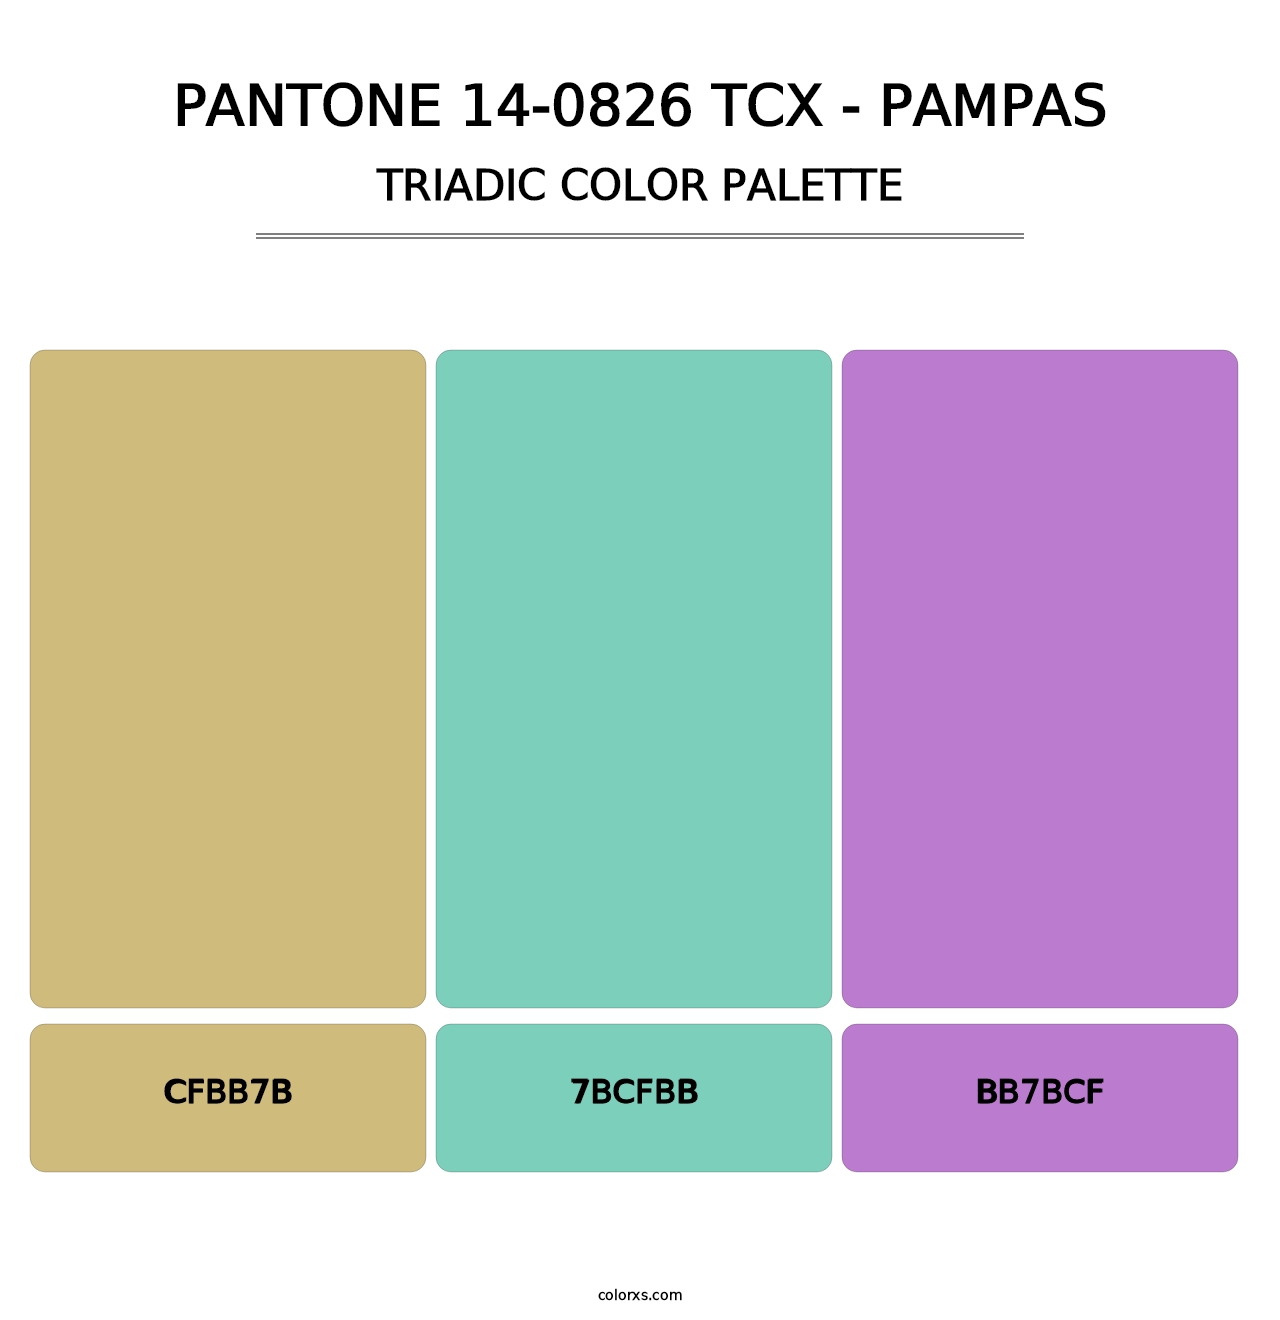 PANTONE 14-0826 TCX - Pampas - Triadic Color Palette